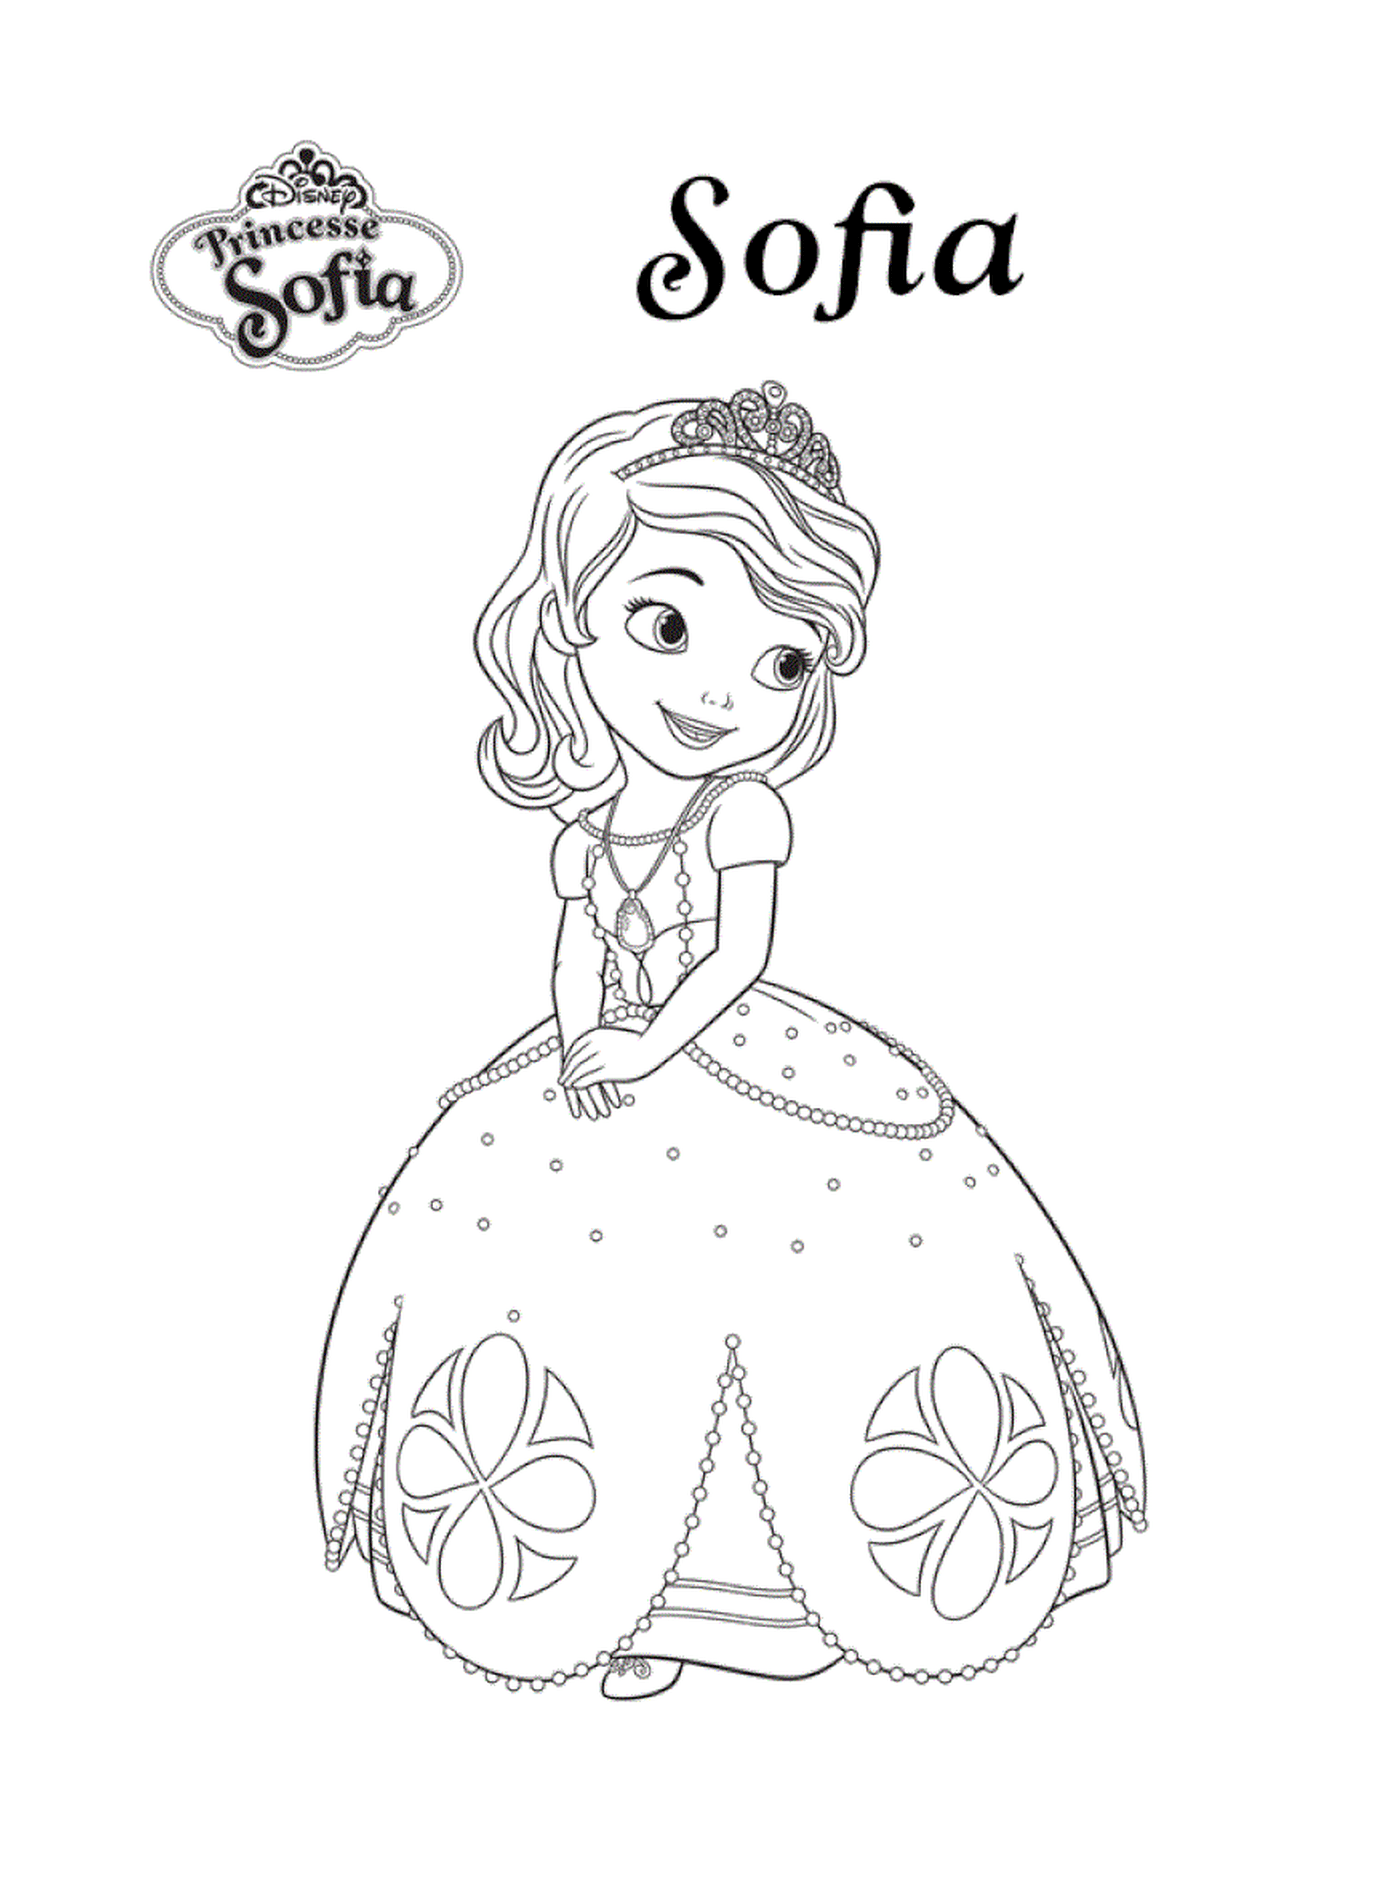  Sofía, una princesa de Disney 